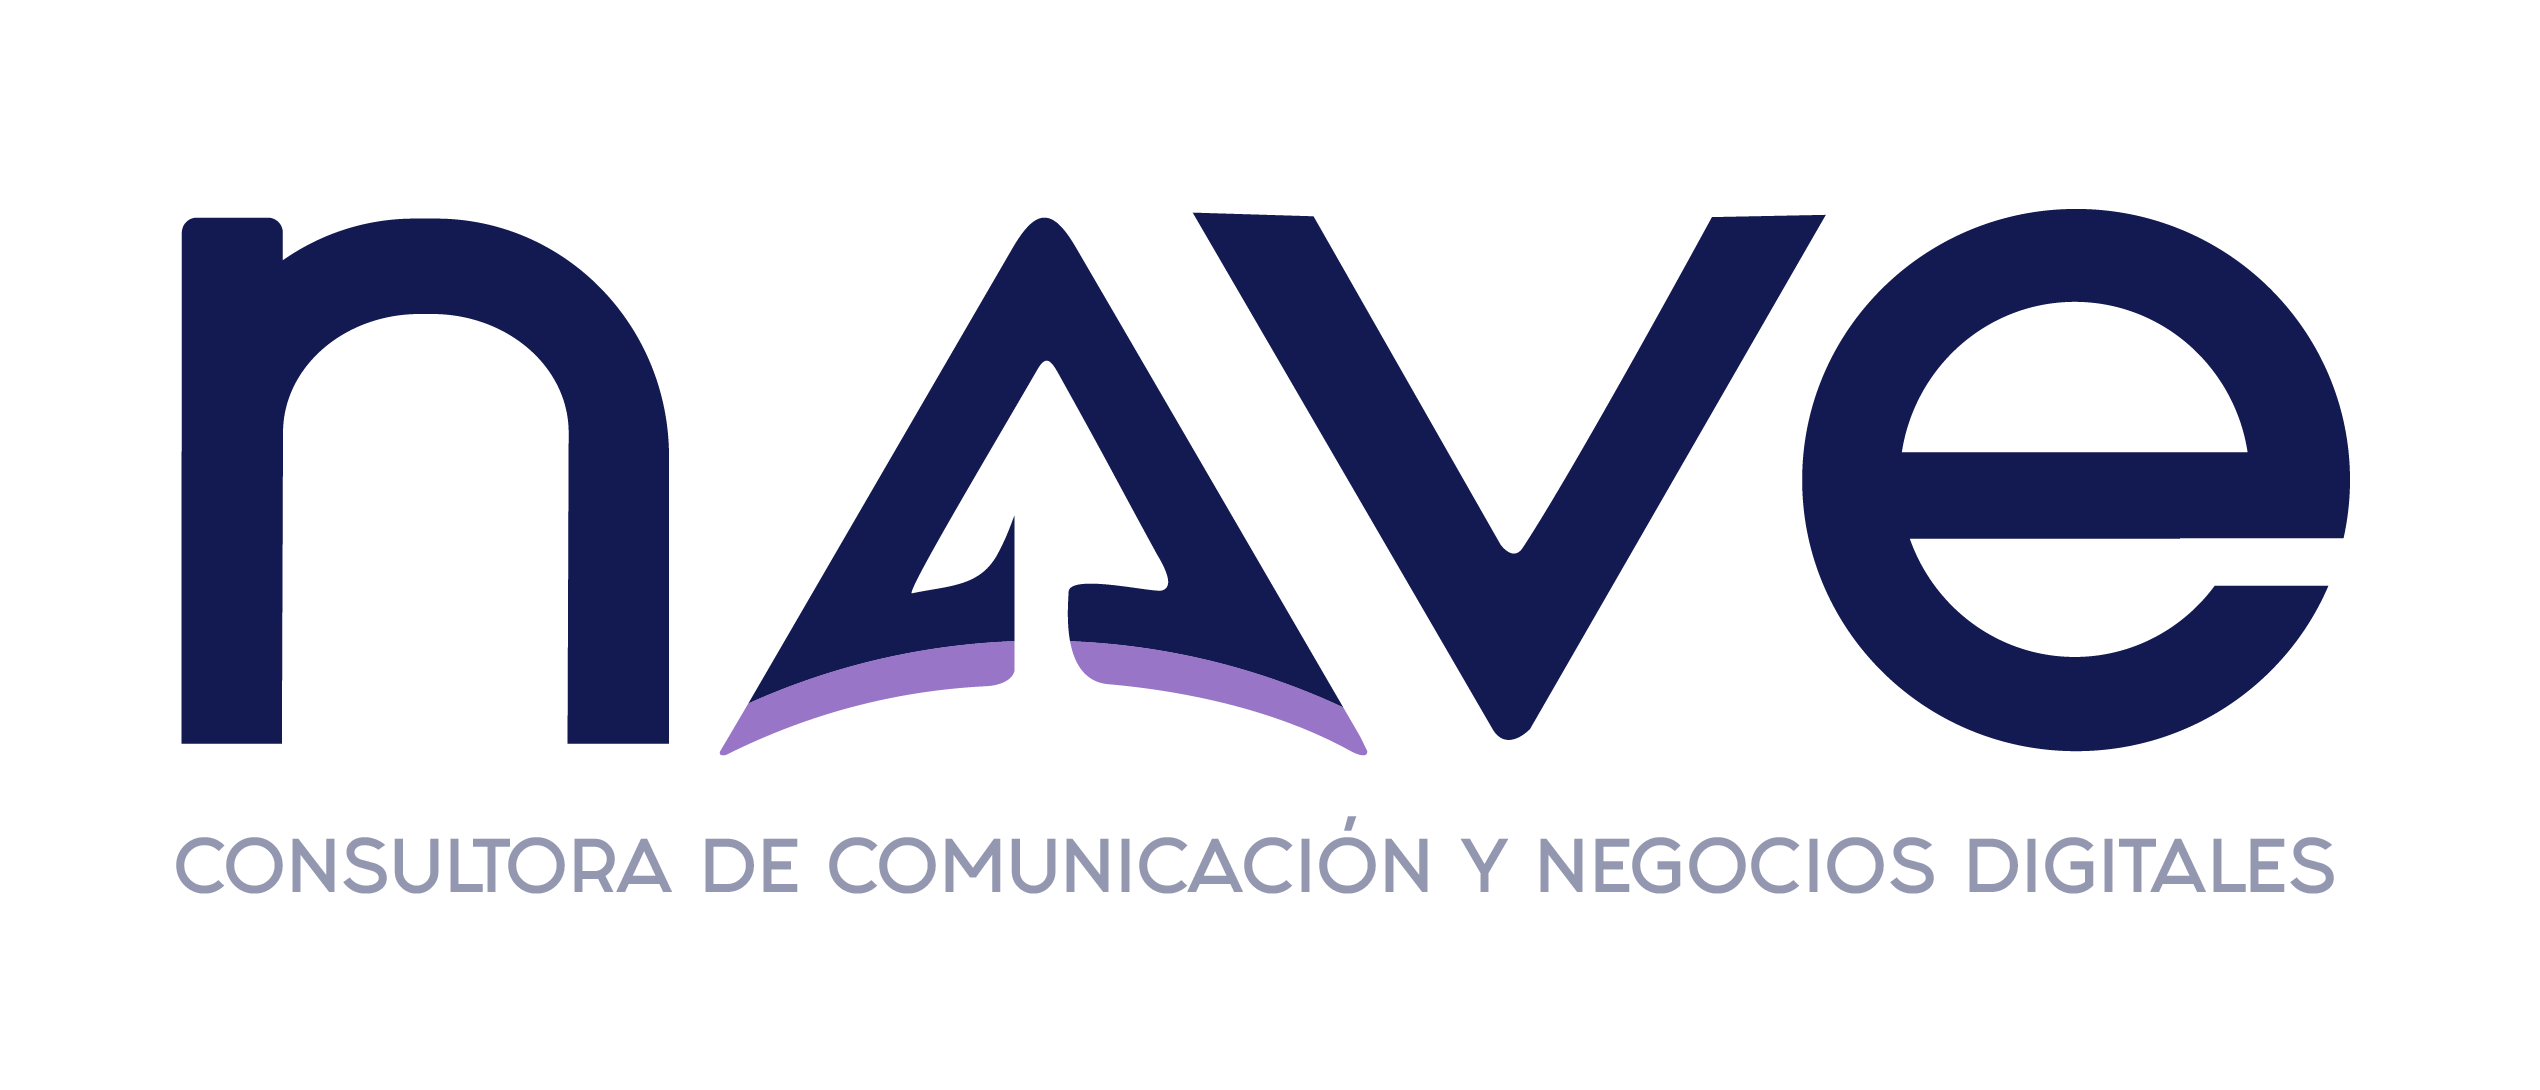 logo-consultora-nave-comunicacion-y-negocios-digitales